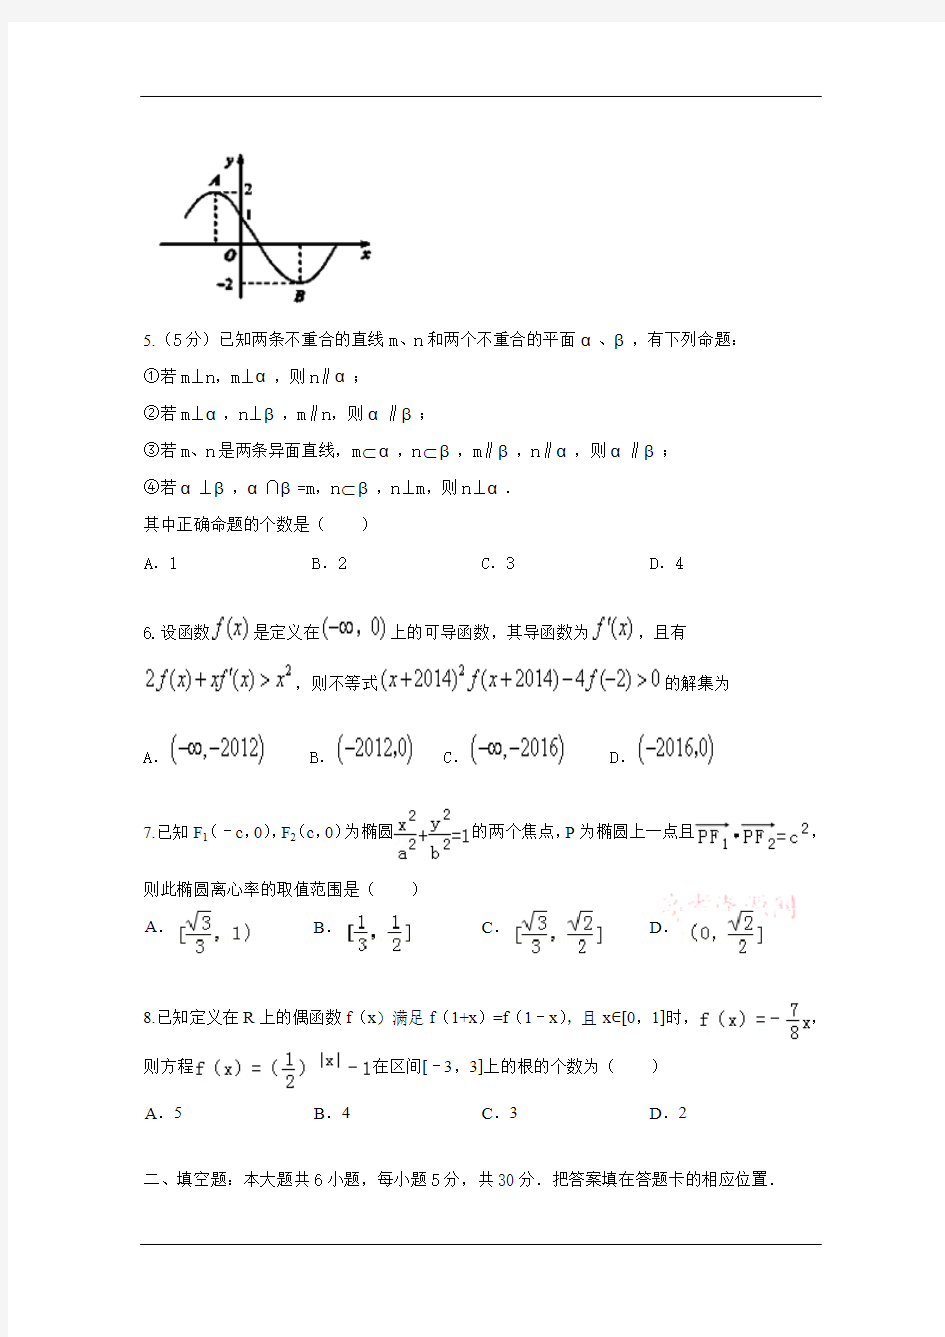 2014北京市高考压轴卷理科数学试题和答案